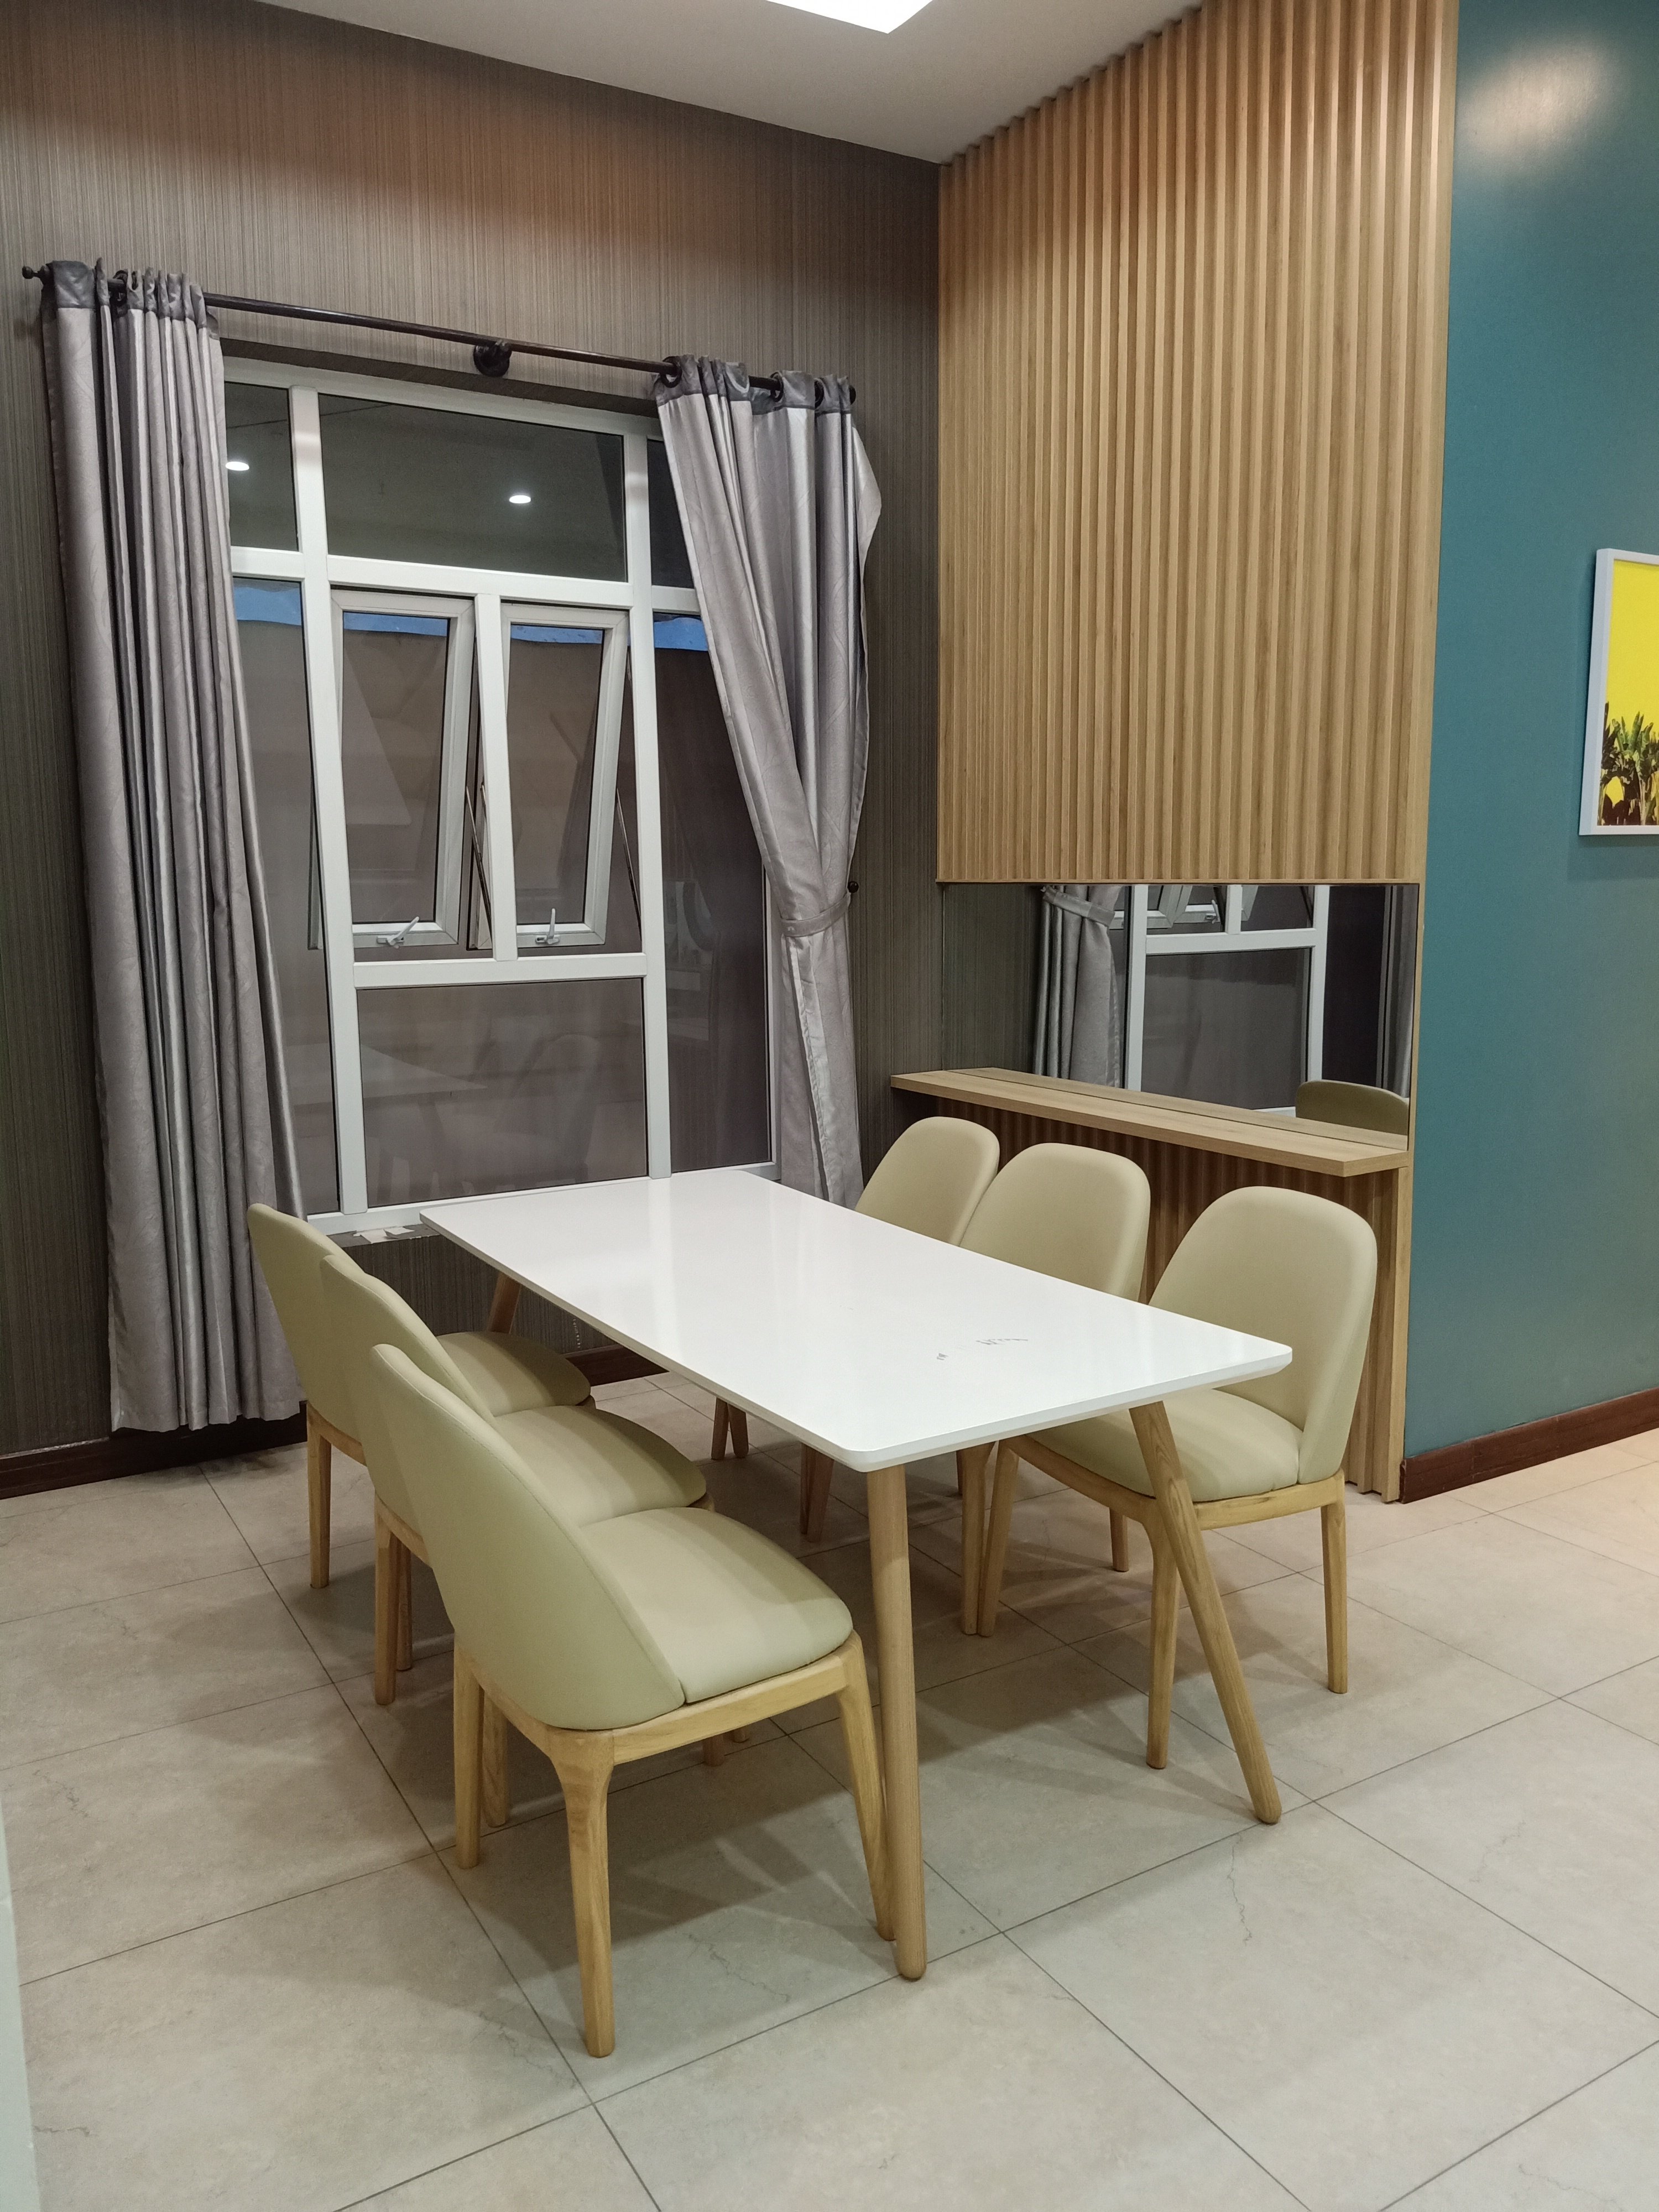 4 Bedroom Mansion For Rent Da Nang – 400m2